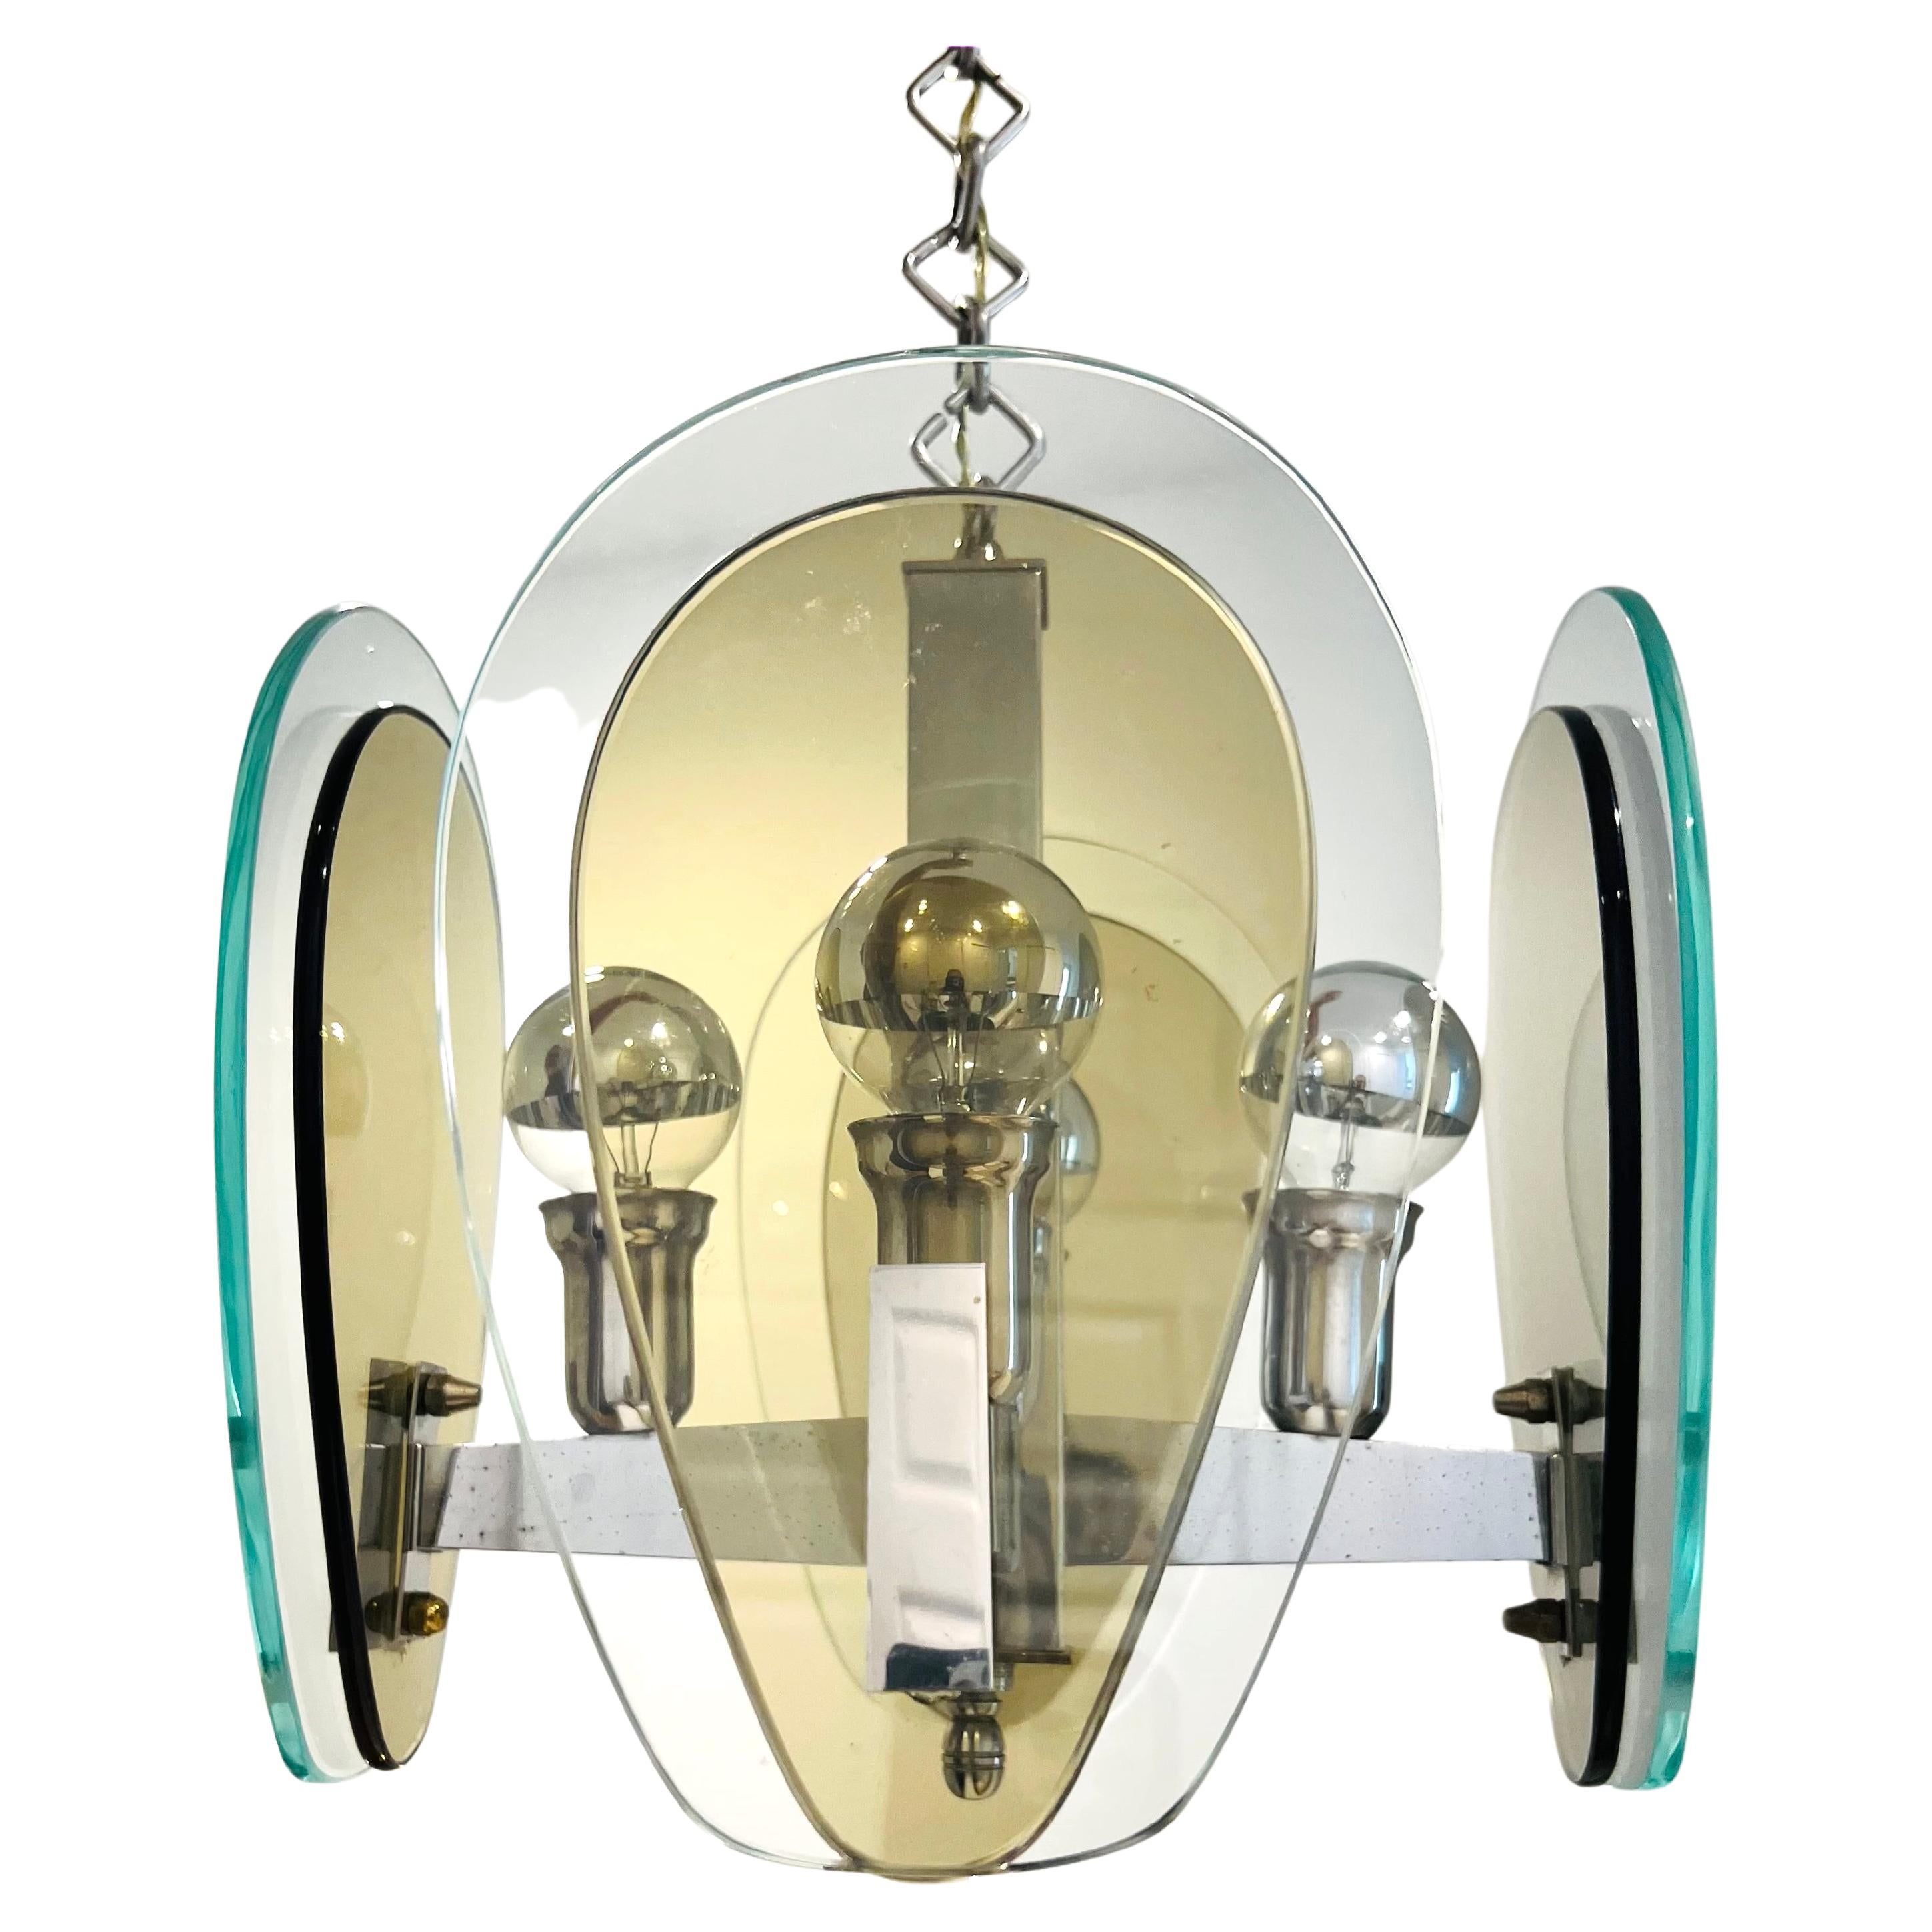 Lampe pendante architecturale italienne à quatre bras, de style moderne du milieu du siècle. Le lustre a une structure chromée équipée de deux abat-jour en verre en forme de goutte d'eau dans des teintes de gris fumé et de vert clair. Il possède une